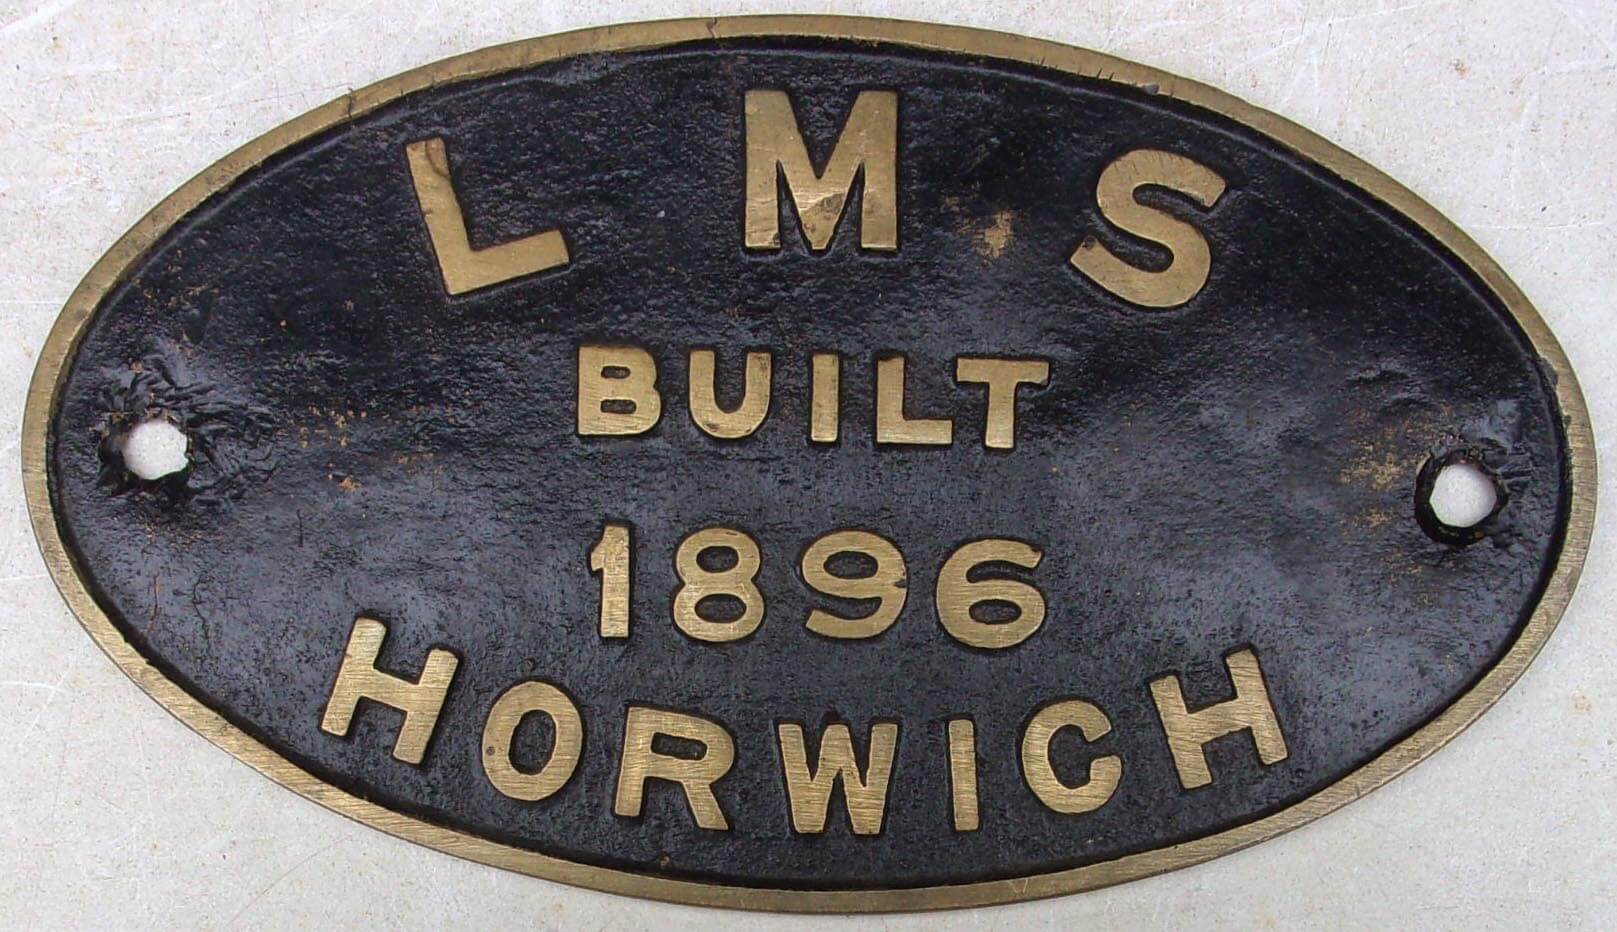 Locomotive Worksplate “LMS 1896 HORWICH” - Great Northern Railwayana ...